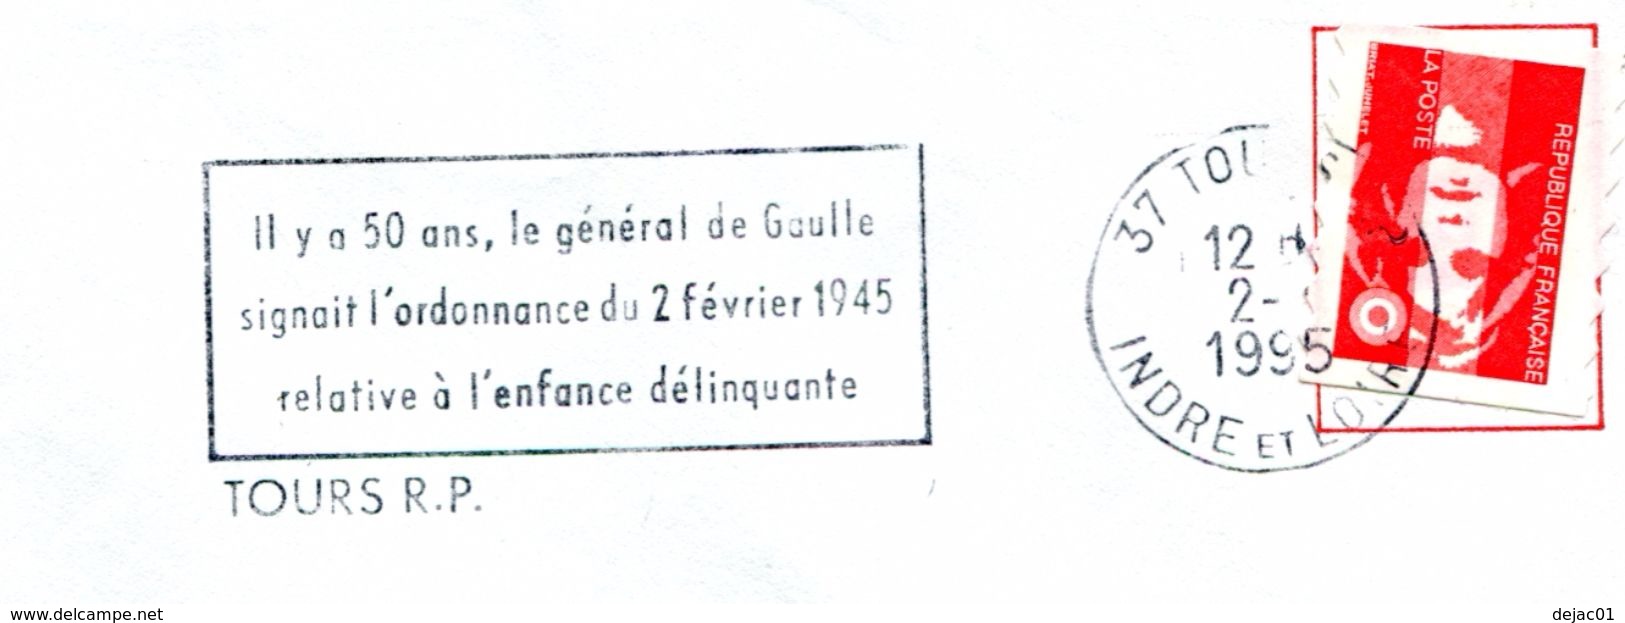 Thème Général De Gaulle - Flamme De Tours - Ordonnance  Sur L'enfance Déliquante - R4279 - De Gaulle (Général)